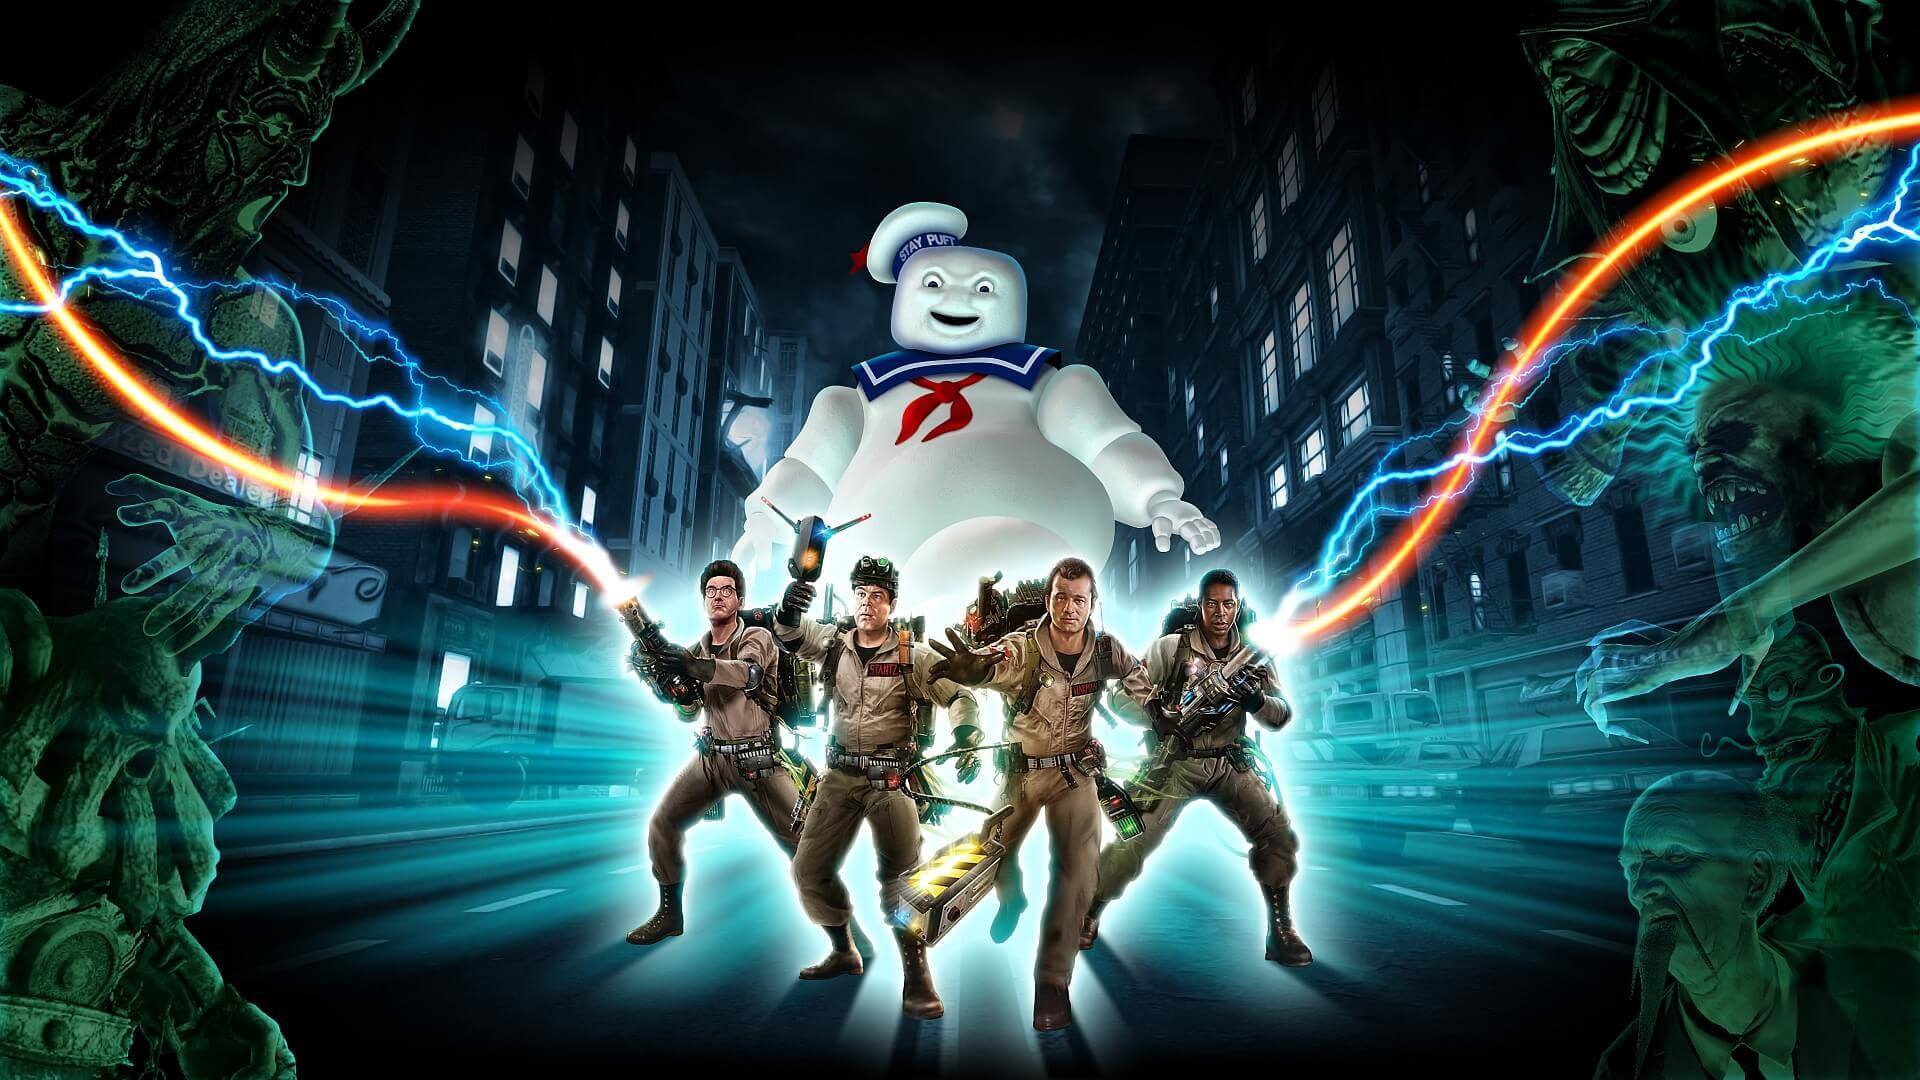 予約開始 Ps4 Switch Ghostbusters The Video Game Remastered がamazonで予約スタート アマゲブログ ゲーム予約情報